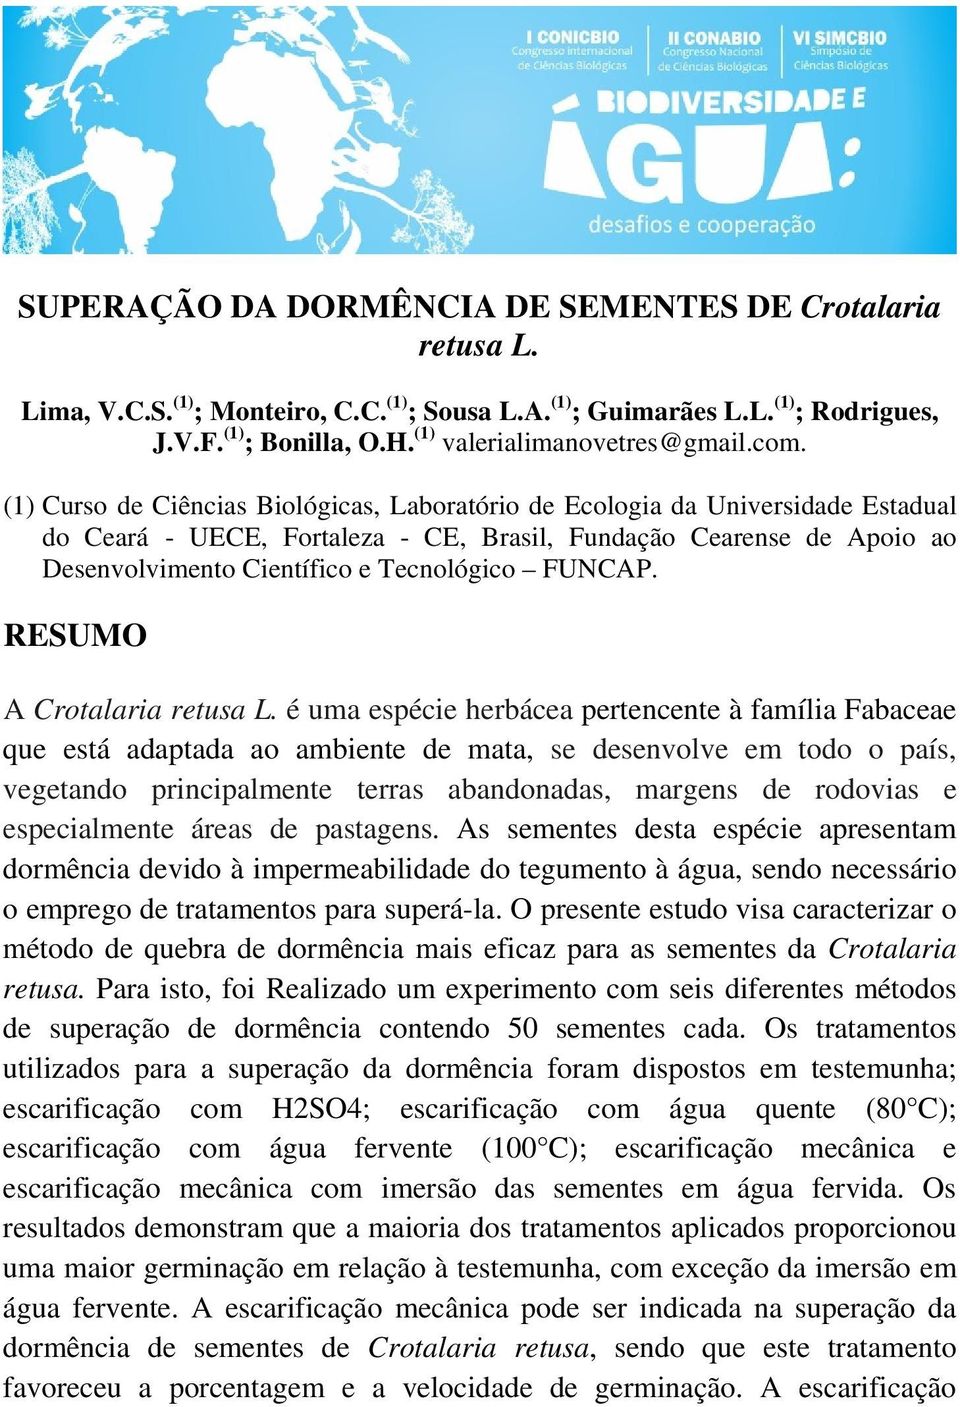 (1) Curso de Ciências Biológicas, Laboratório de Ecologia da Universidade Estadual do Ceará - UECE, Fortaleza - CE, Brasil, Fundação Cearense de Apoio ao Desenvolvimento Científico e Tecnológico